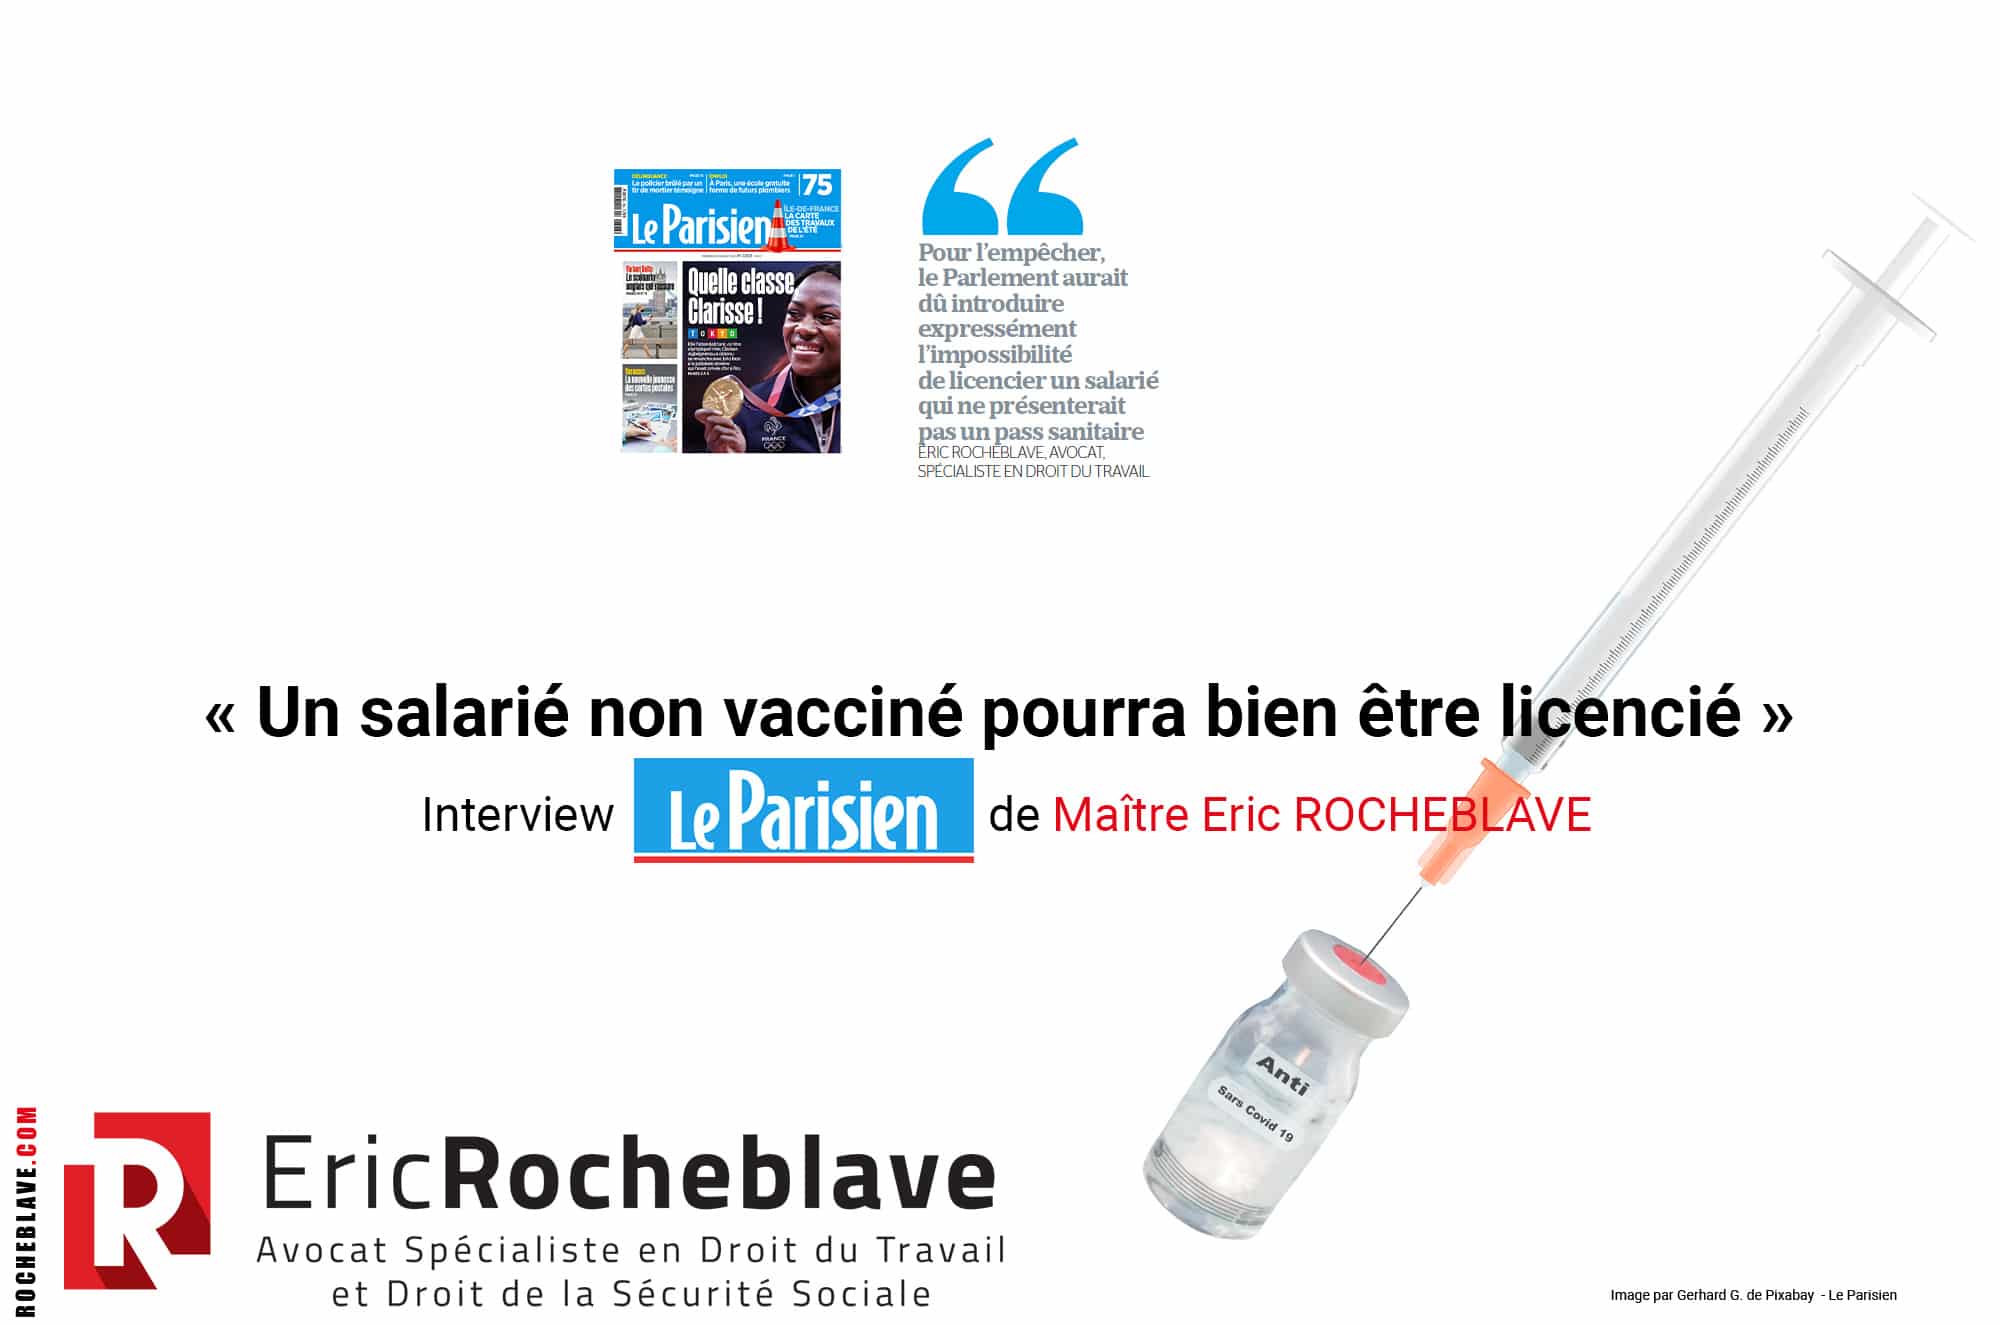 « Un salarié non vacciné pourra bien être licencié » Interview Le Parisien de Maître Eric ROCHEBLAVE